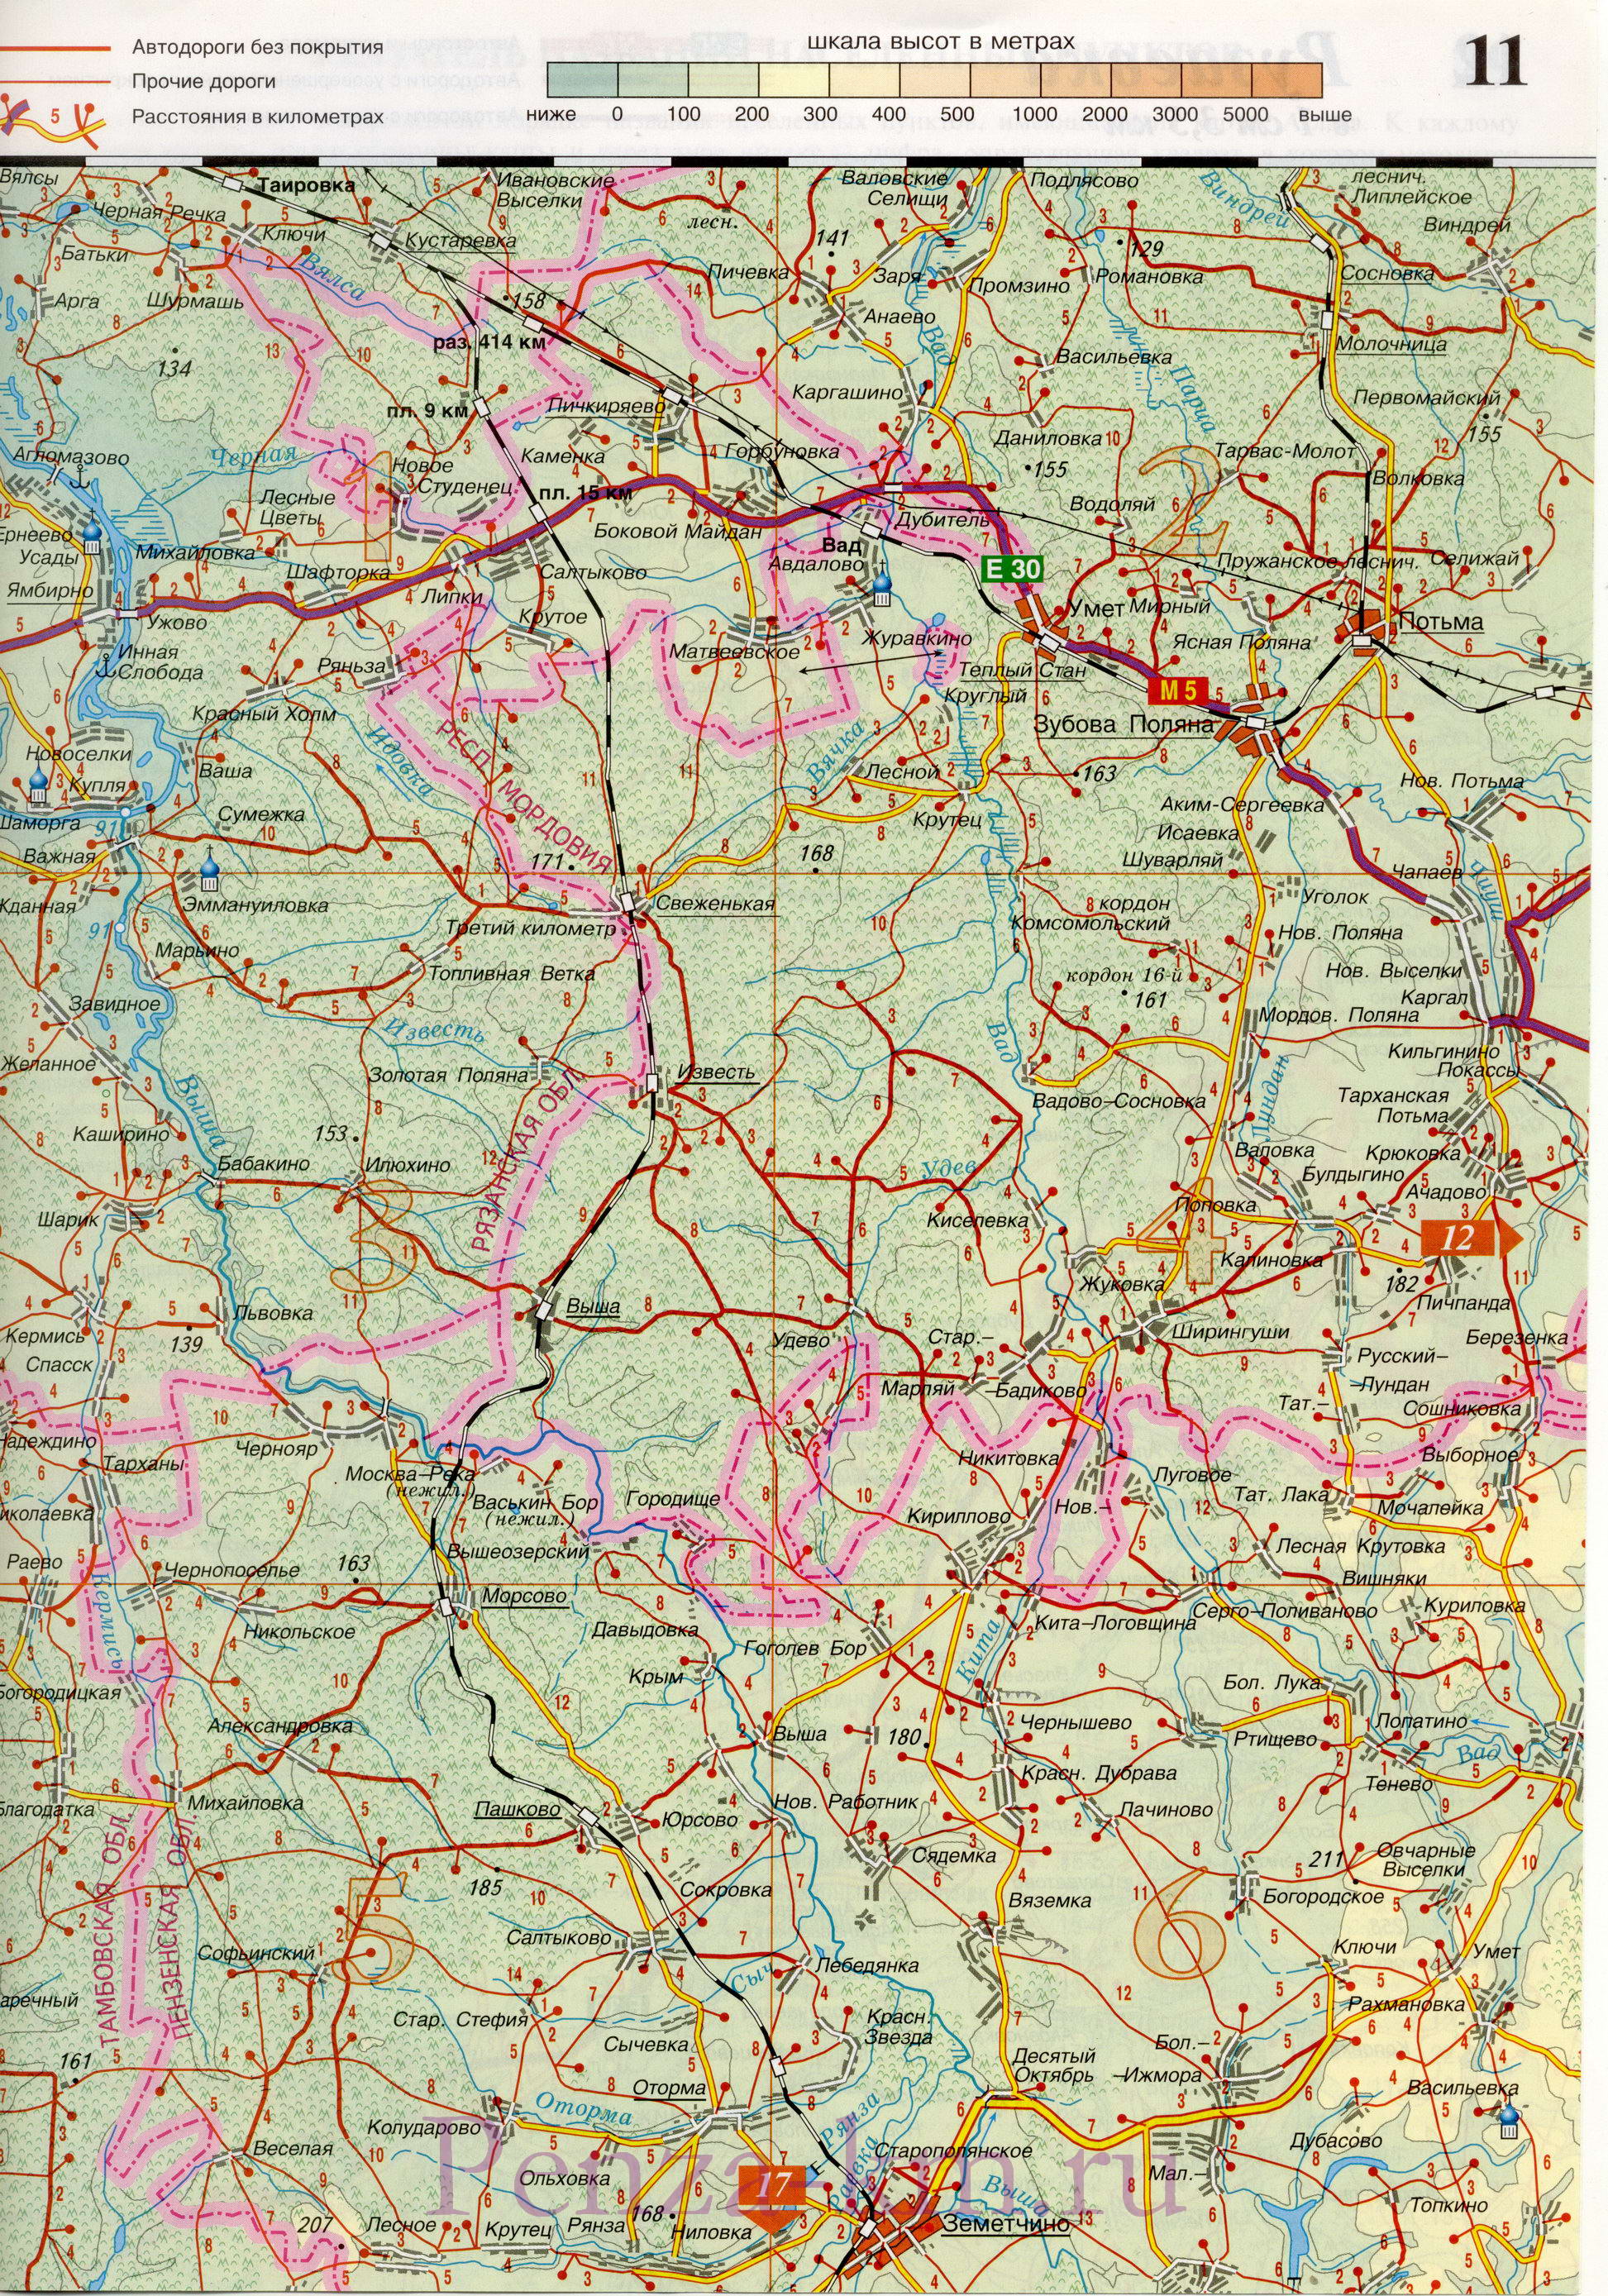  Пензенская область карта дорог. Подробная карта автодорог Пензенской области масштаба 1см:3,5км, A0 - 